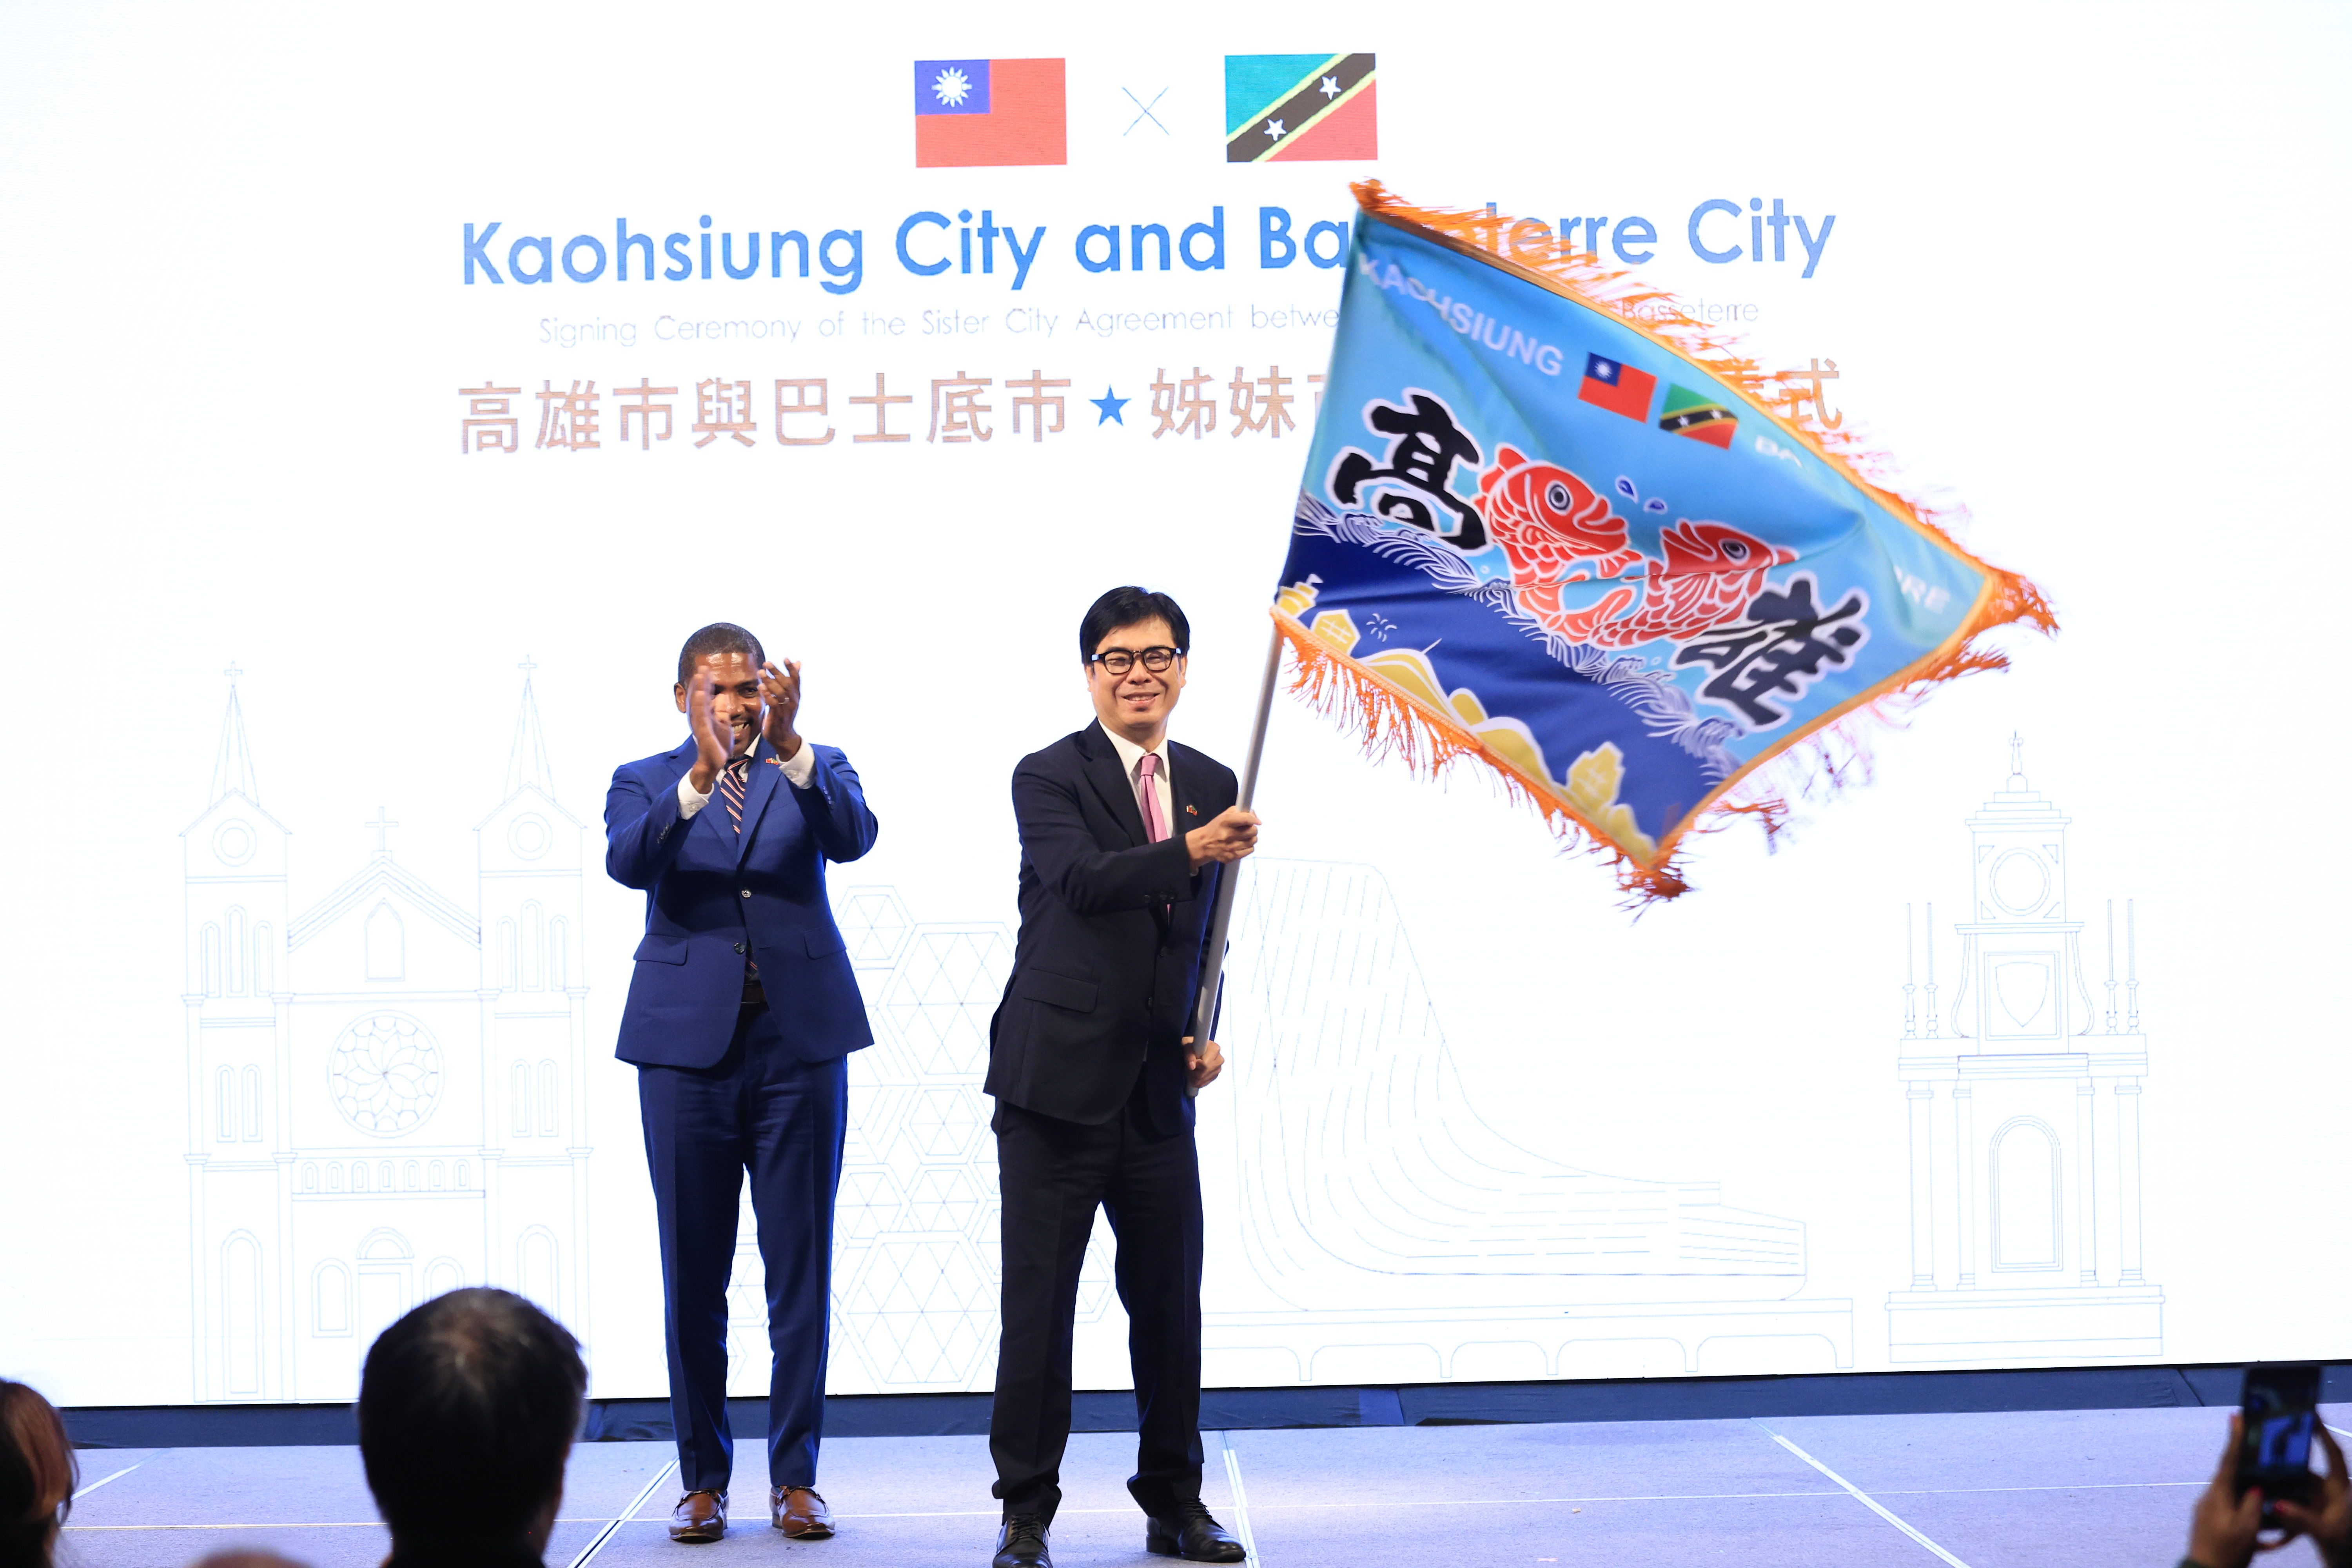 圖說一：高雄市長陳其邁與克國德魯總理共同揮舞繪有台克兩國國旗以及高雄城市意象的大漁旗，象徵兩國兩市共榮發展。